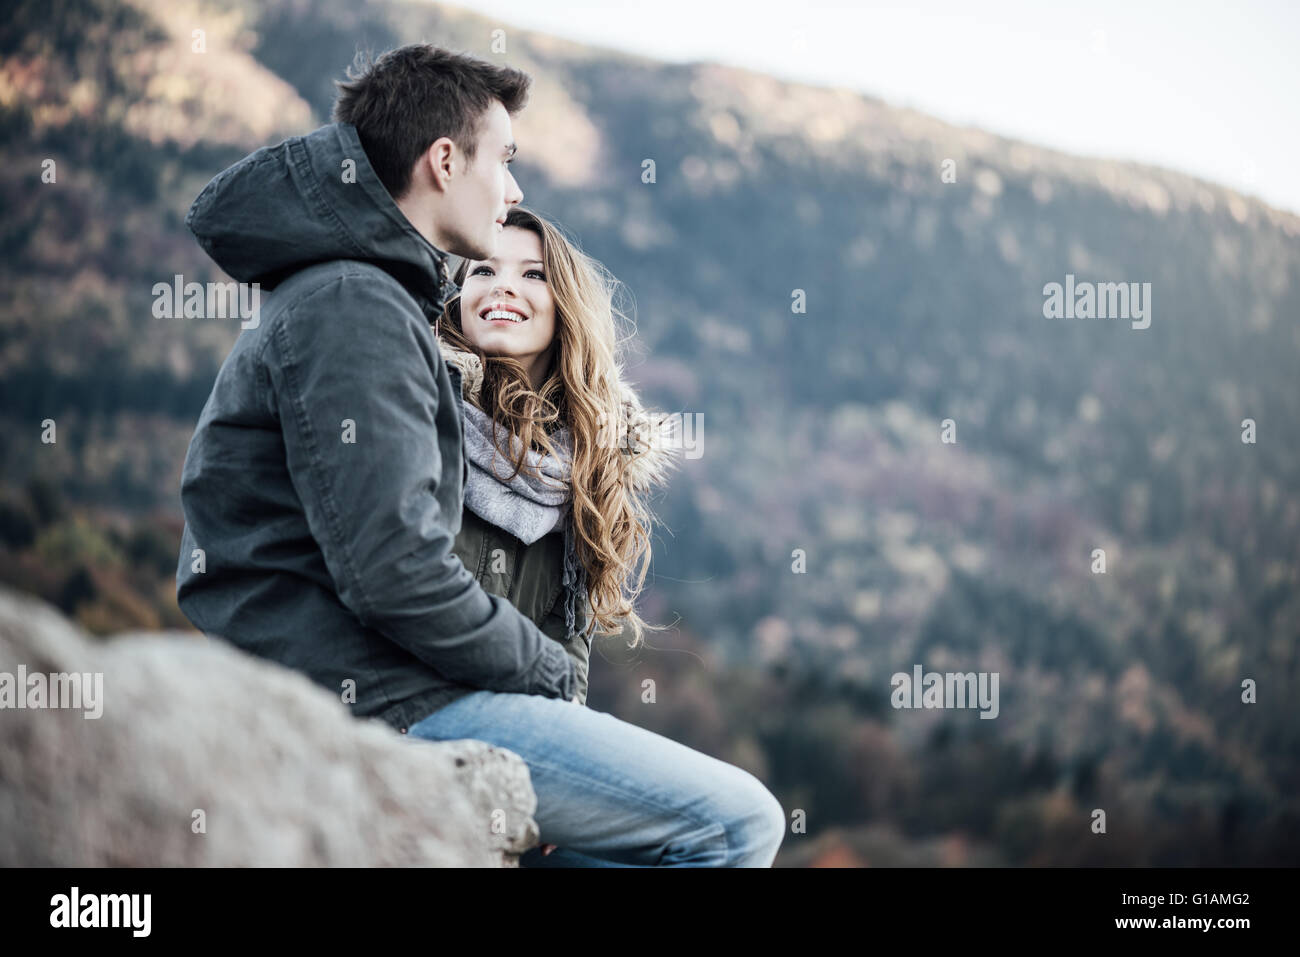 Romántica pareja joven dating en invierno están sentados juntos, ella está en busca de su novio Foto de stock